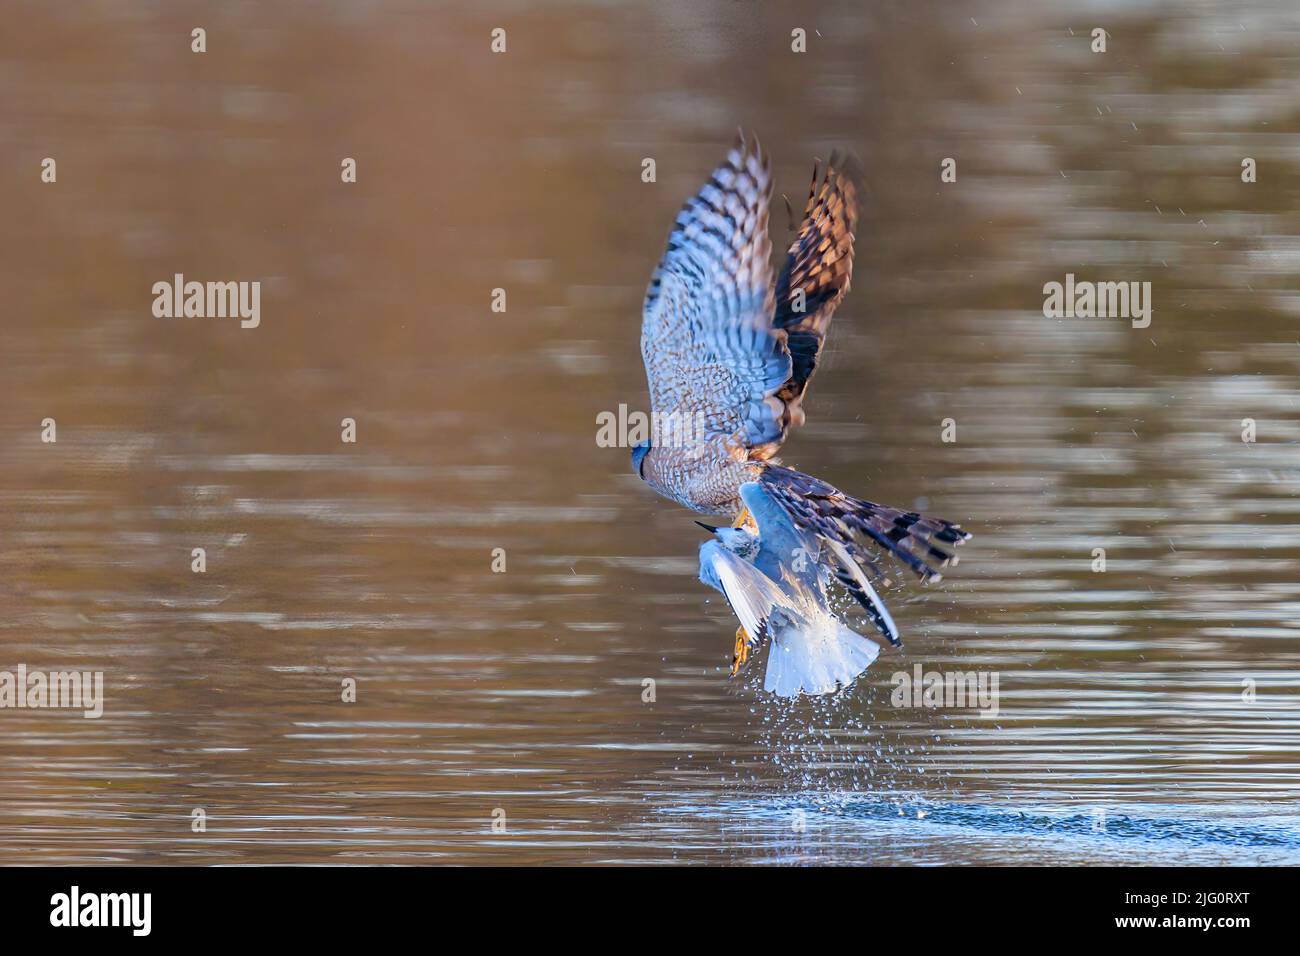 00784-00712 Hawk de Cooper (Accipiter cooperii) Levantándose después de golpear la gaviota de Bonaparte en el agua Clinton Co. Il Foto de stock